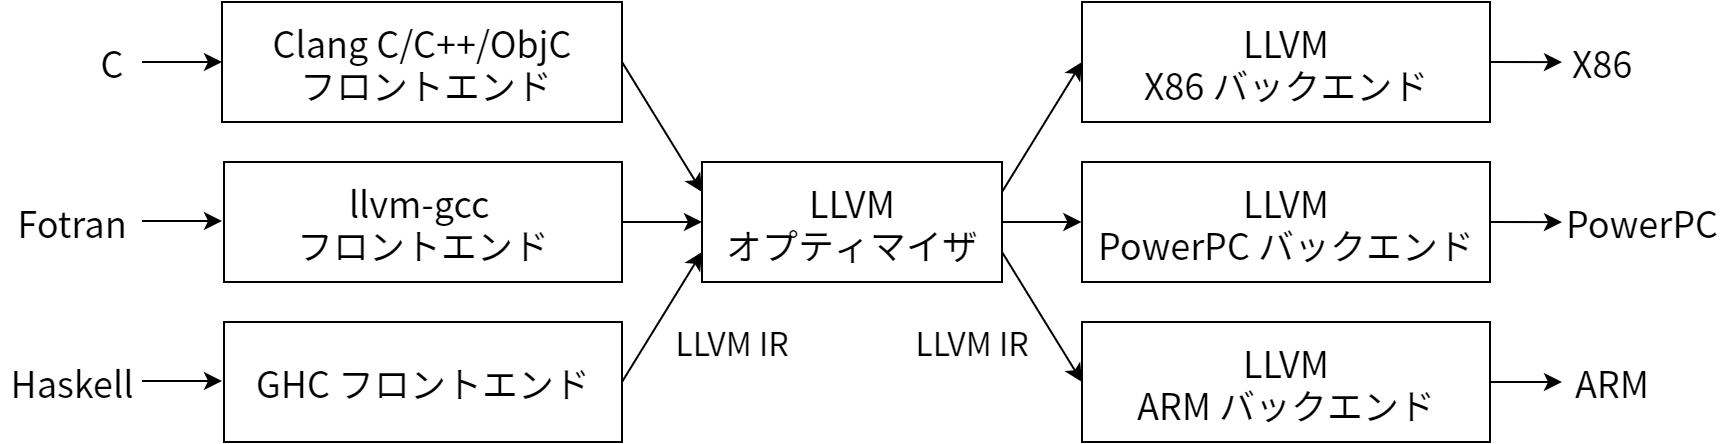 LLVM における三フェーズ設計の実装